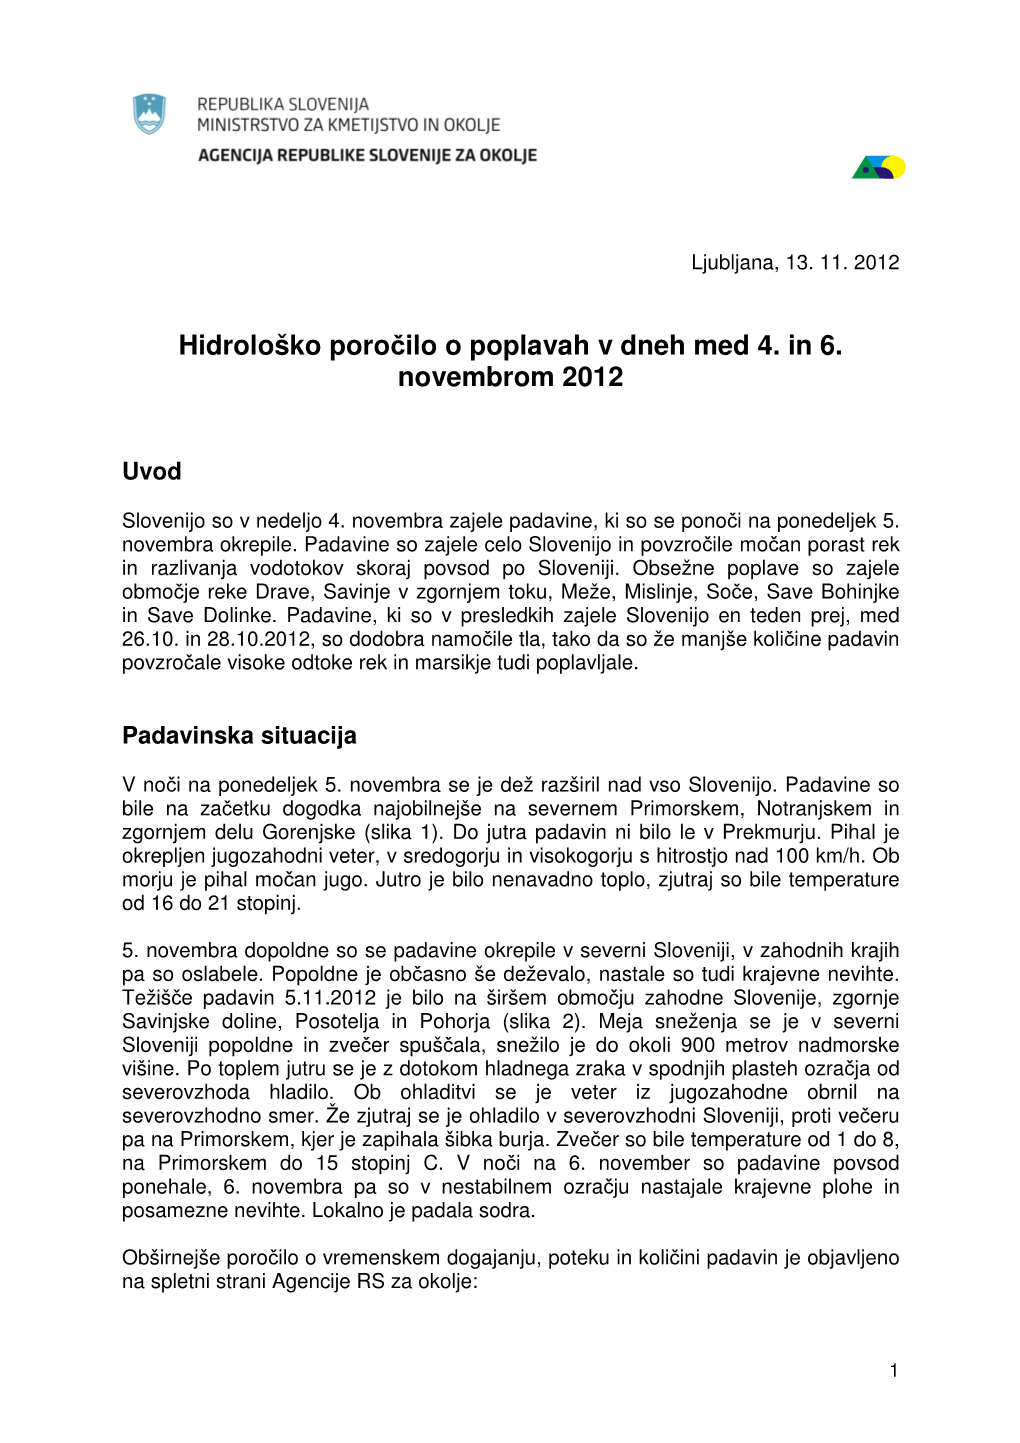 Hidrološko Poročilo O Poplavah V Dneh Med 4. in 6. Novembrom 2012